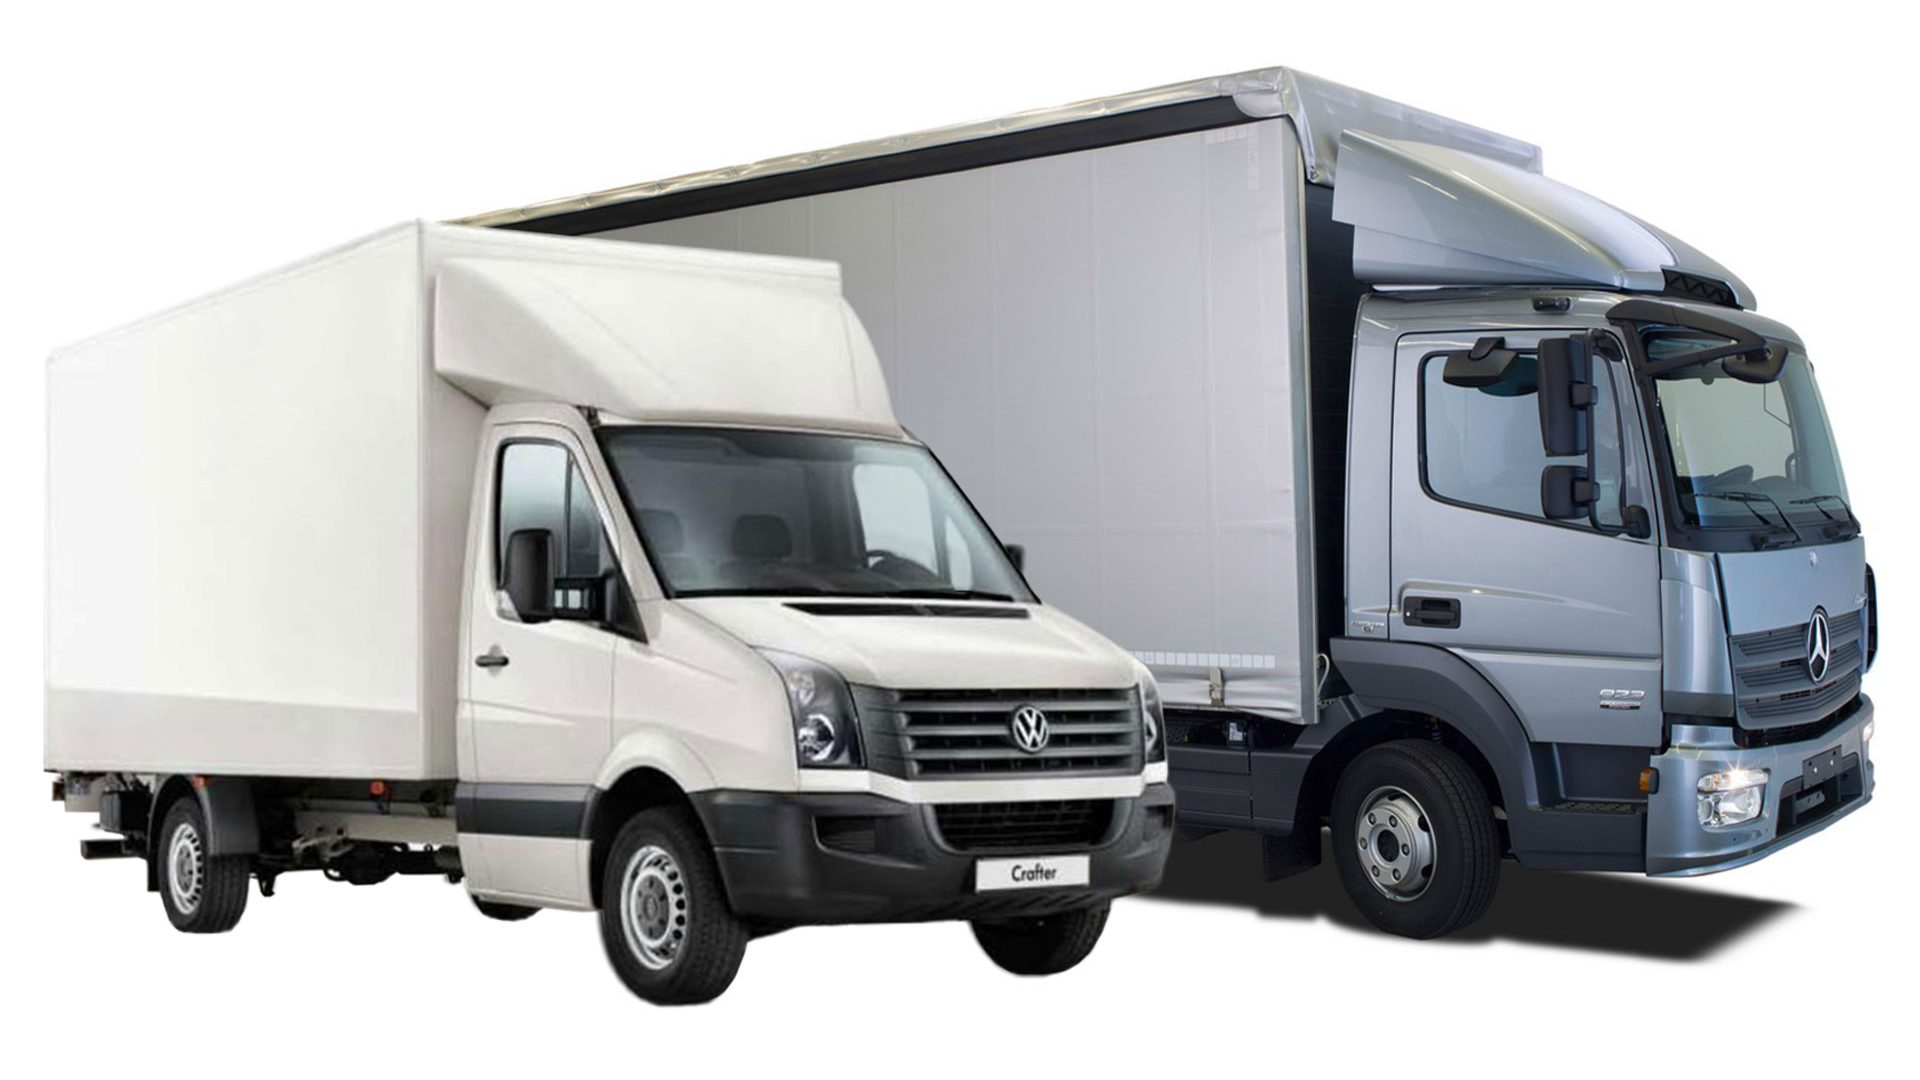 Виды перевозок: какие бывают перевозки, виды грузовых перевозок, их классификация и особенности